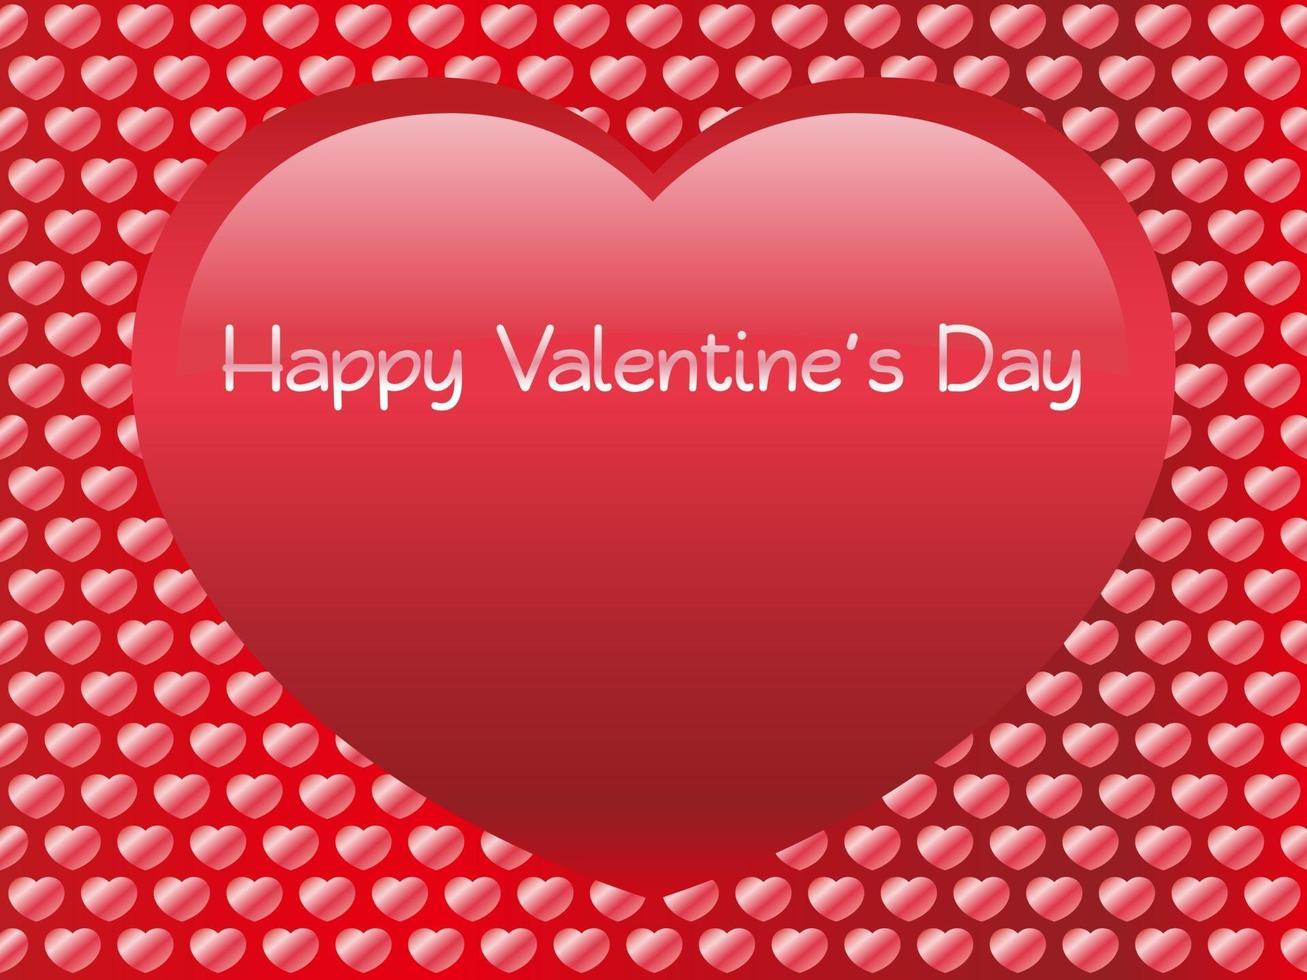 Plantilla de tarjeta de vector transparente de San Valentín con forma de corazón rojo brillante grande